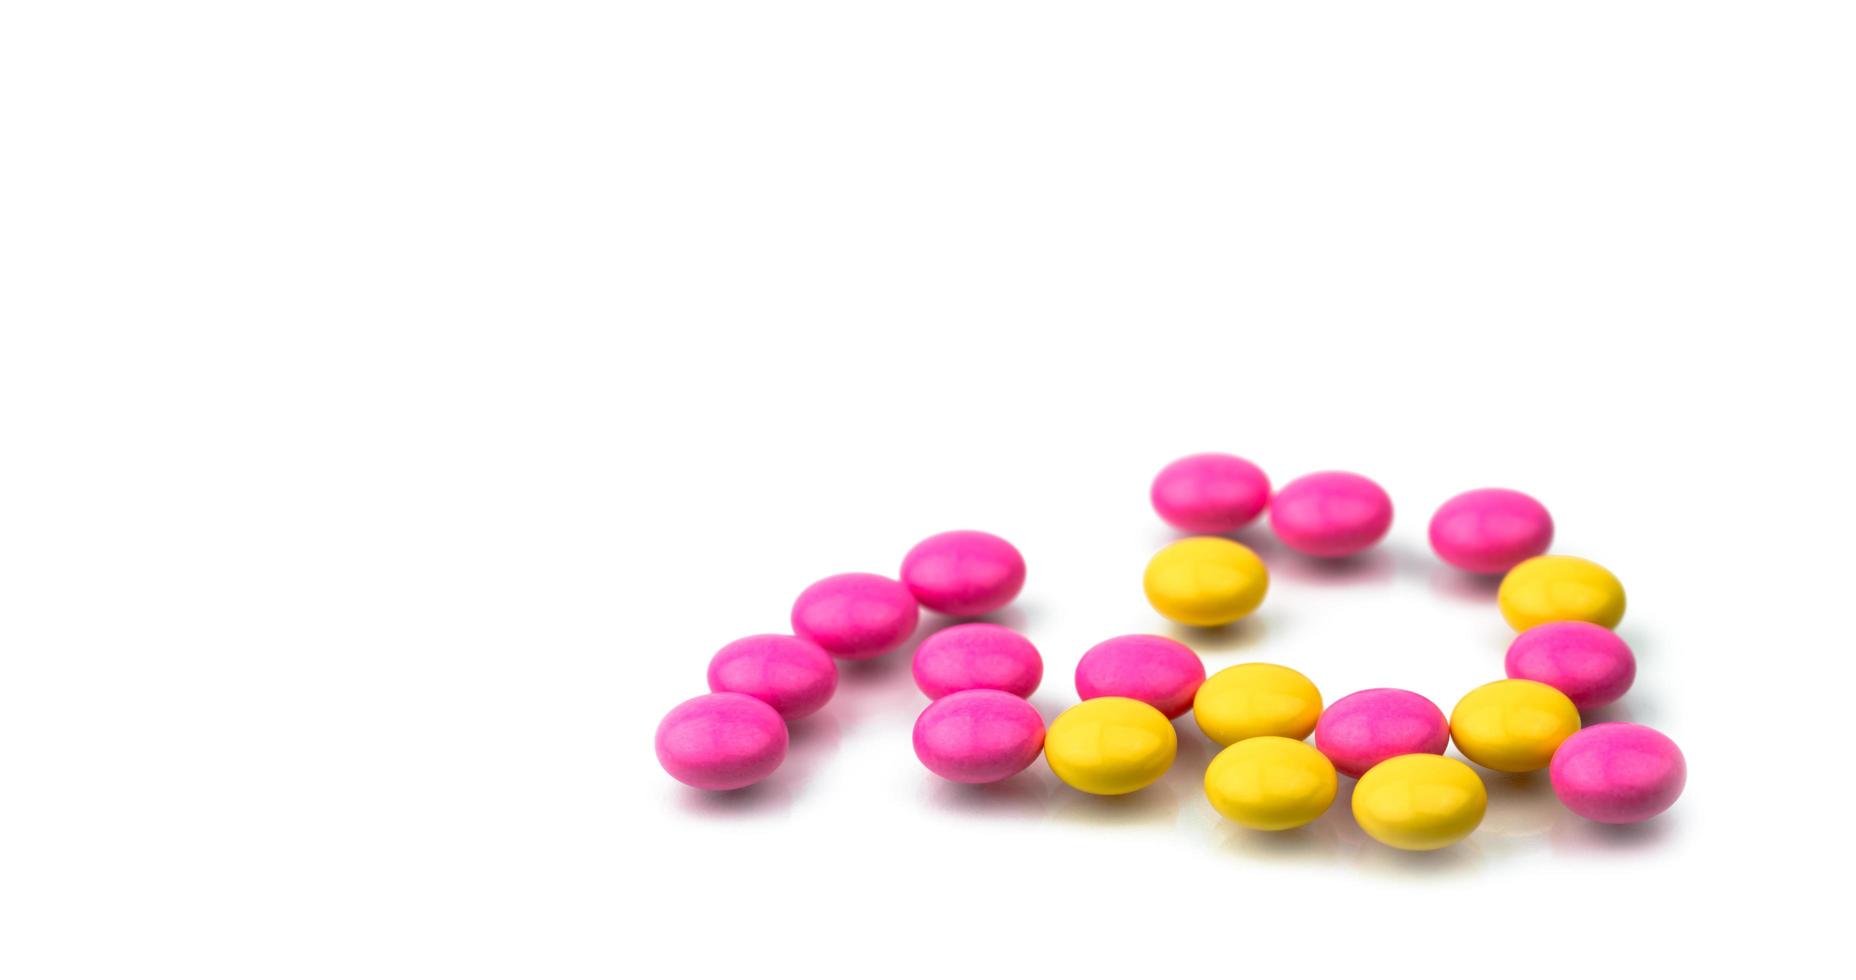 mucchio di pillole di compresse rivestite di zucchero rotonde rosa e gialle isolate su sfondo bianco con spazio per la copia. pillole colorate per il trattamento della profilassi anti-ansia, antidepressiva ed emicrania. foto